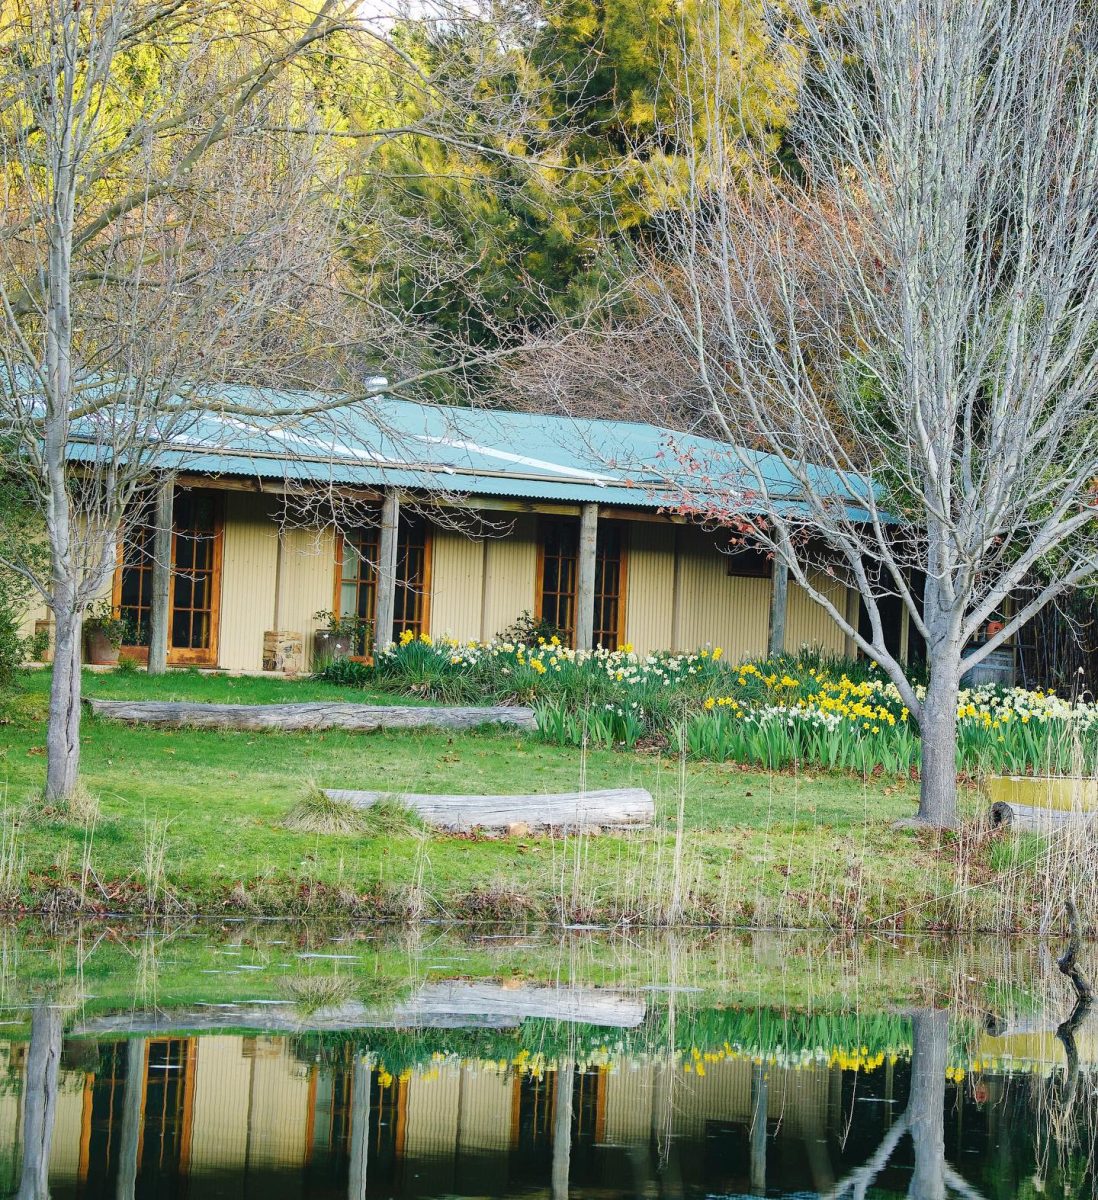 Redbrow Garden Guesthouse near the lake